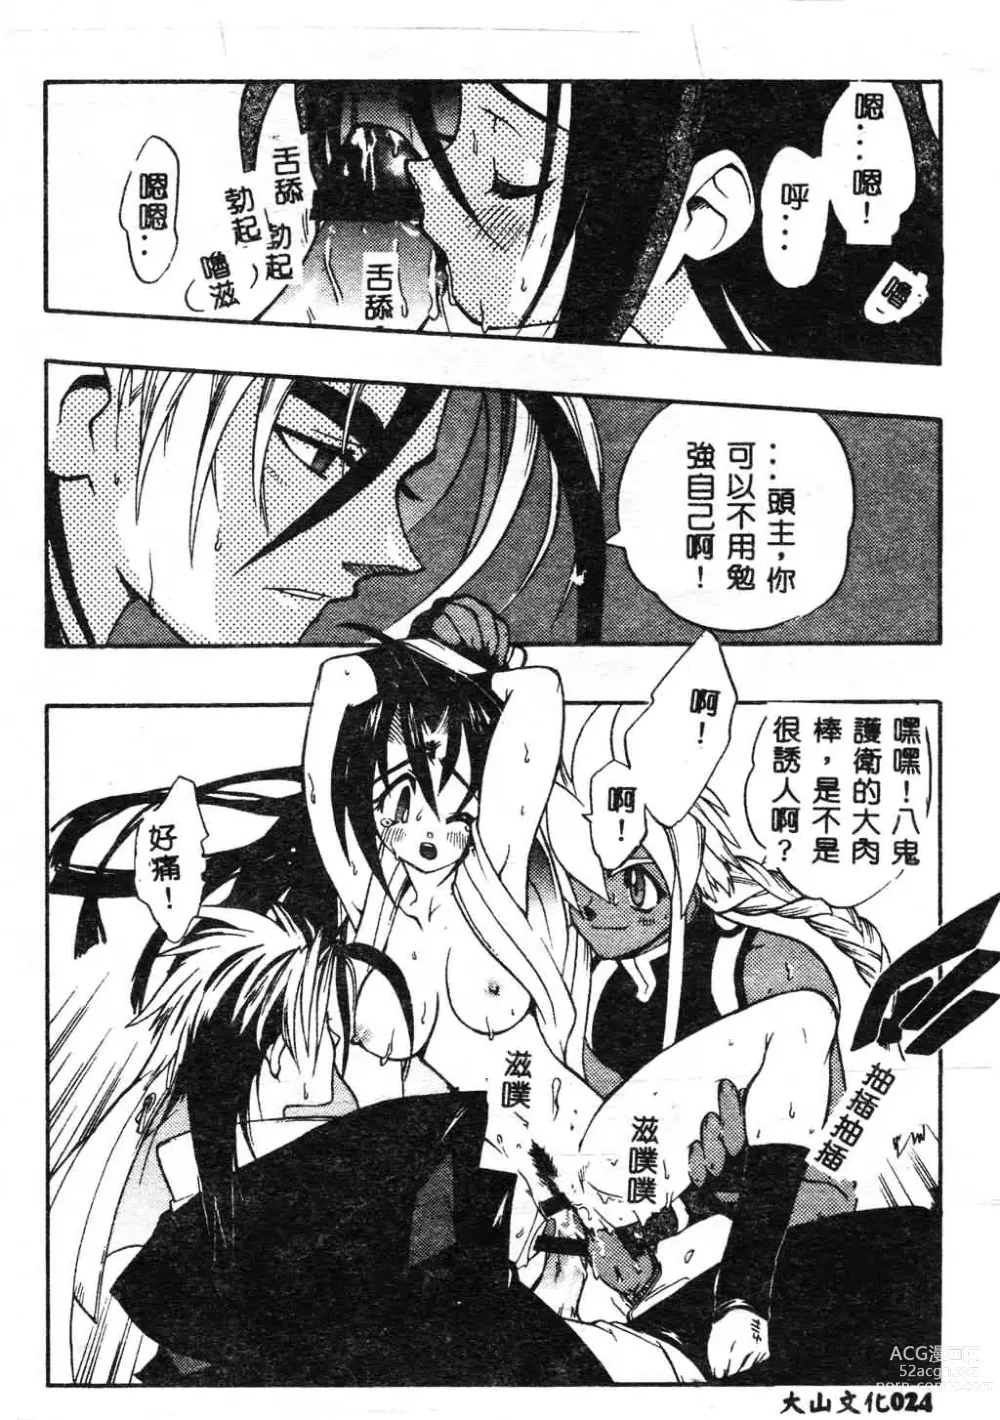 Page 25 of manga Fuusatsu Hyakke